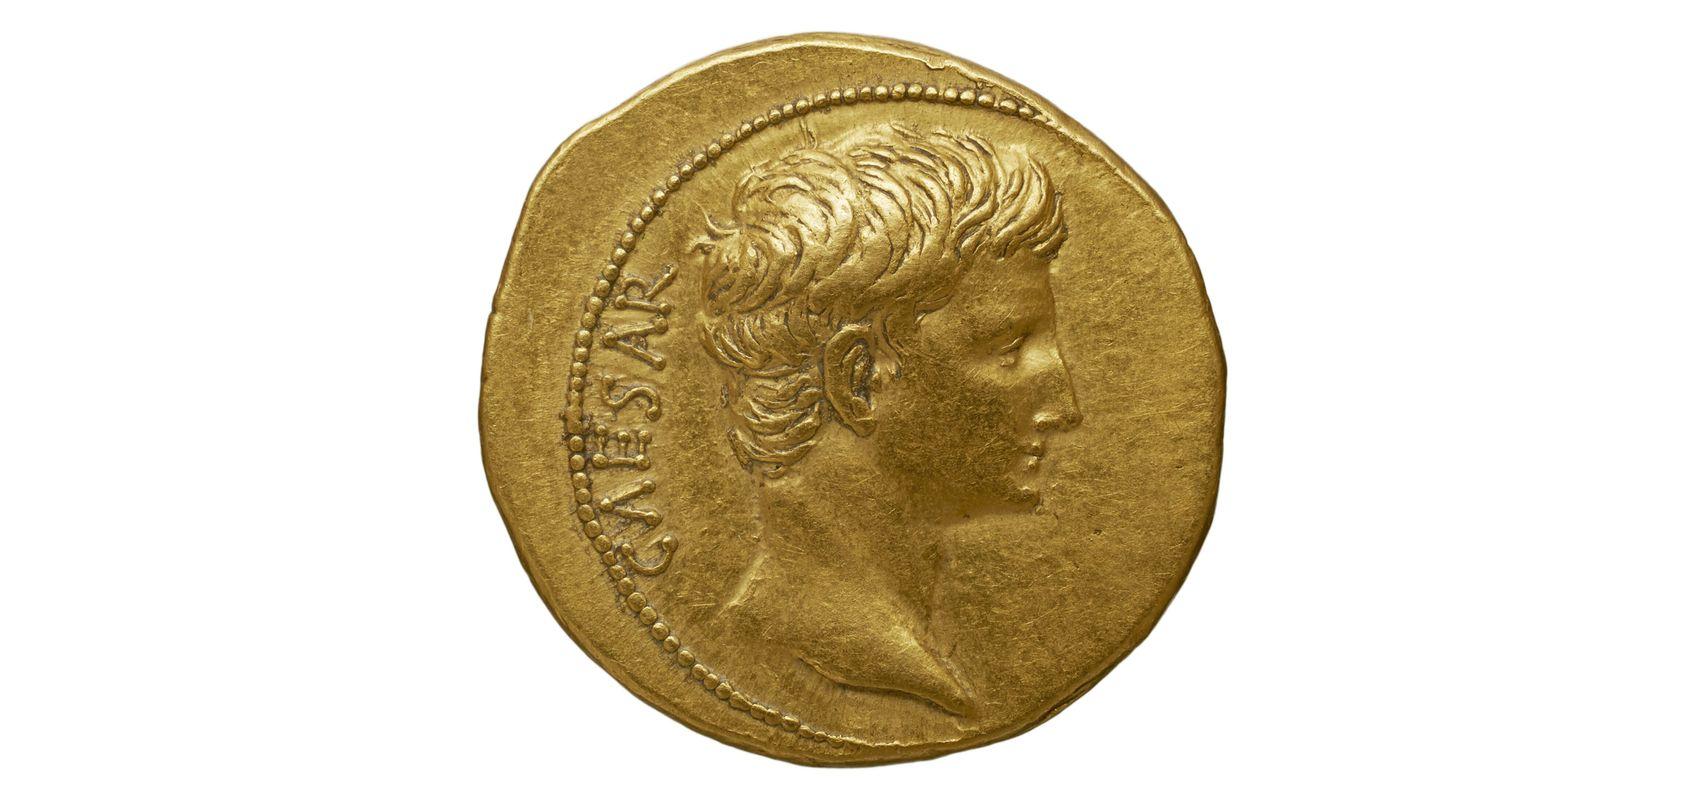 Aureus représentant Auguste - - 27 - BnF, département des Monnaies, médailles et antiques